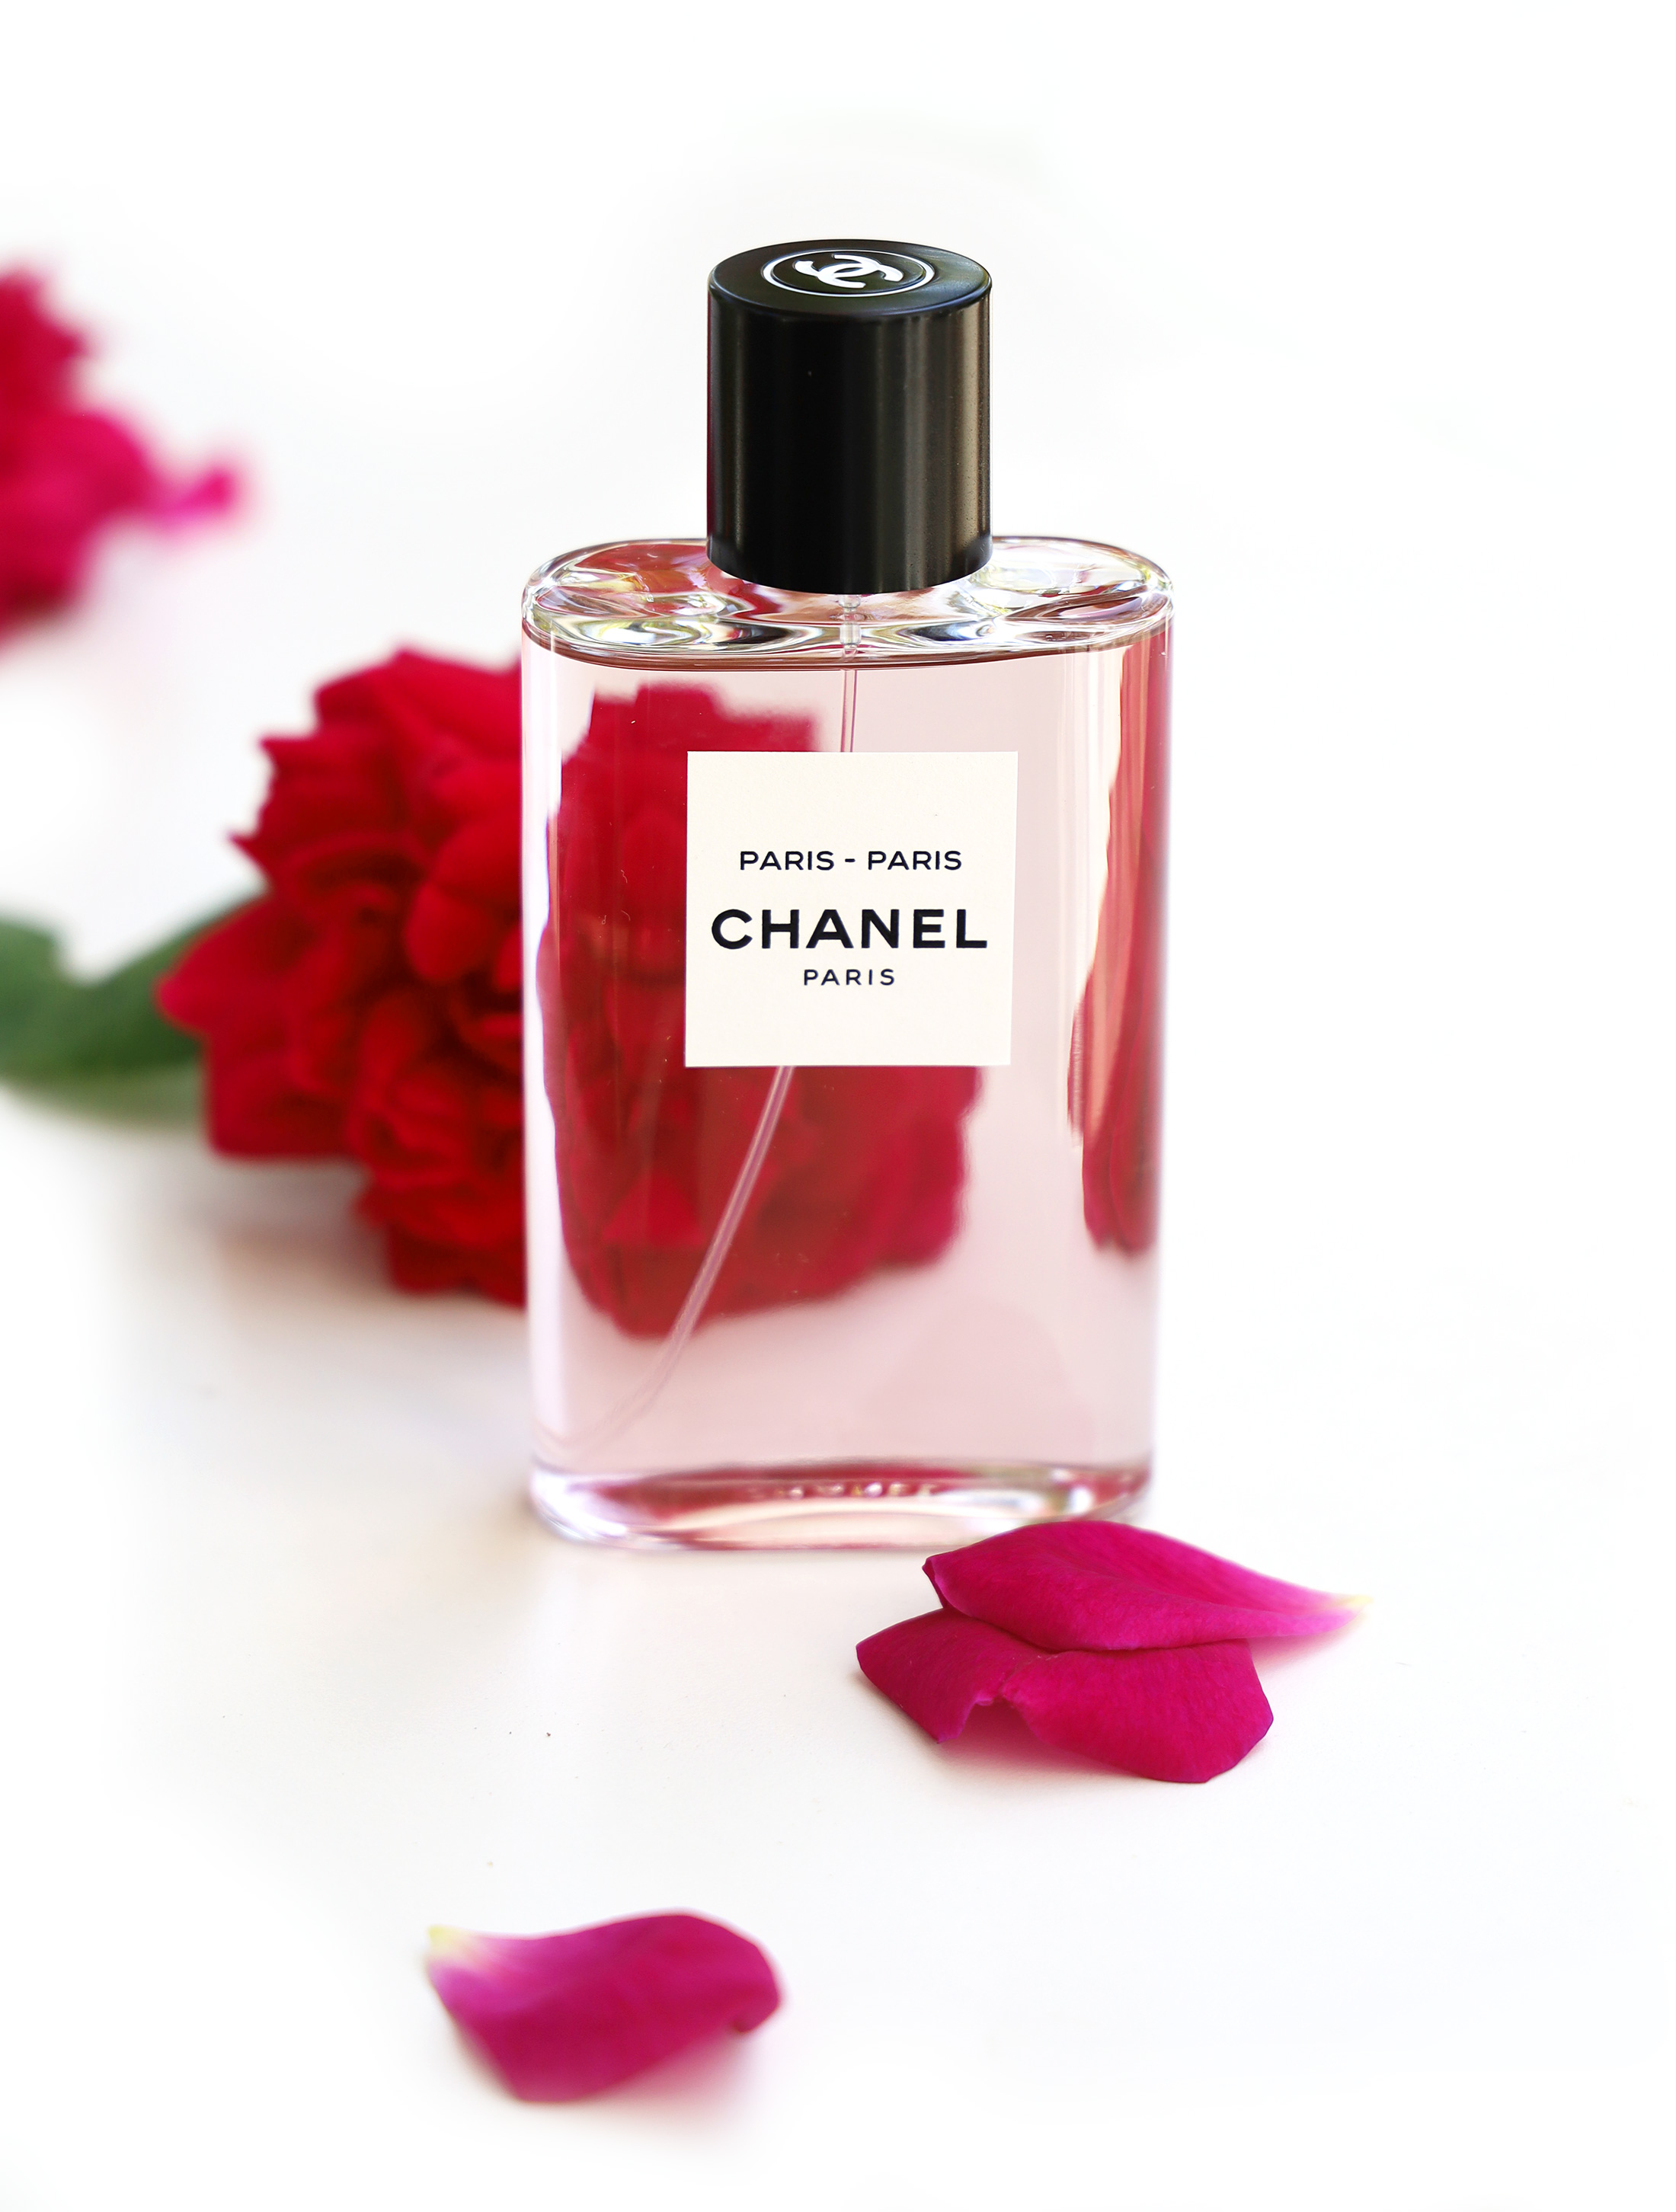 Frivolity in a Serious Genre – Chanel Paris - Paris ~ Fragrance Reviews